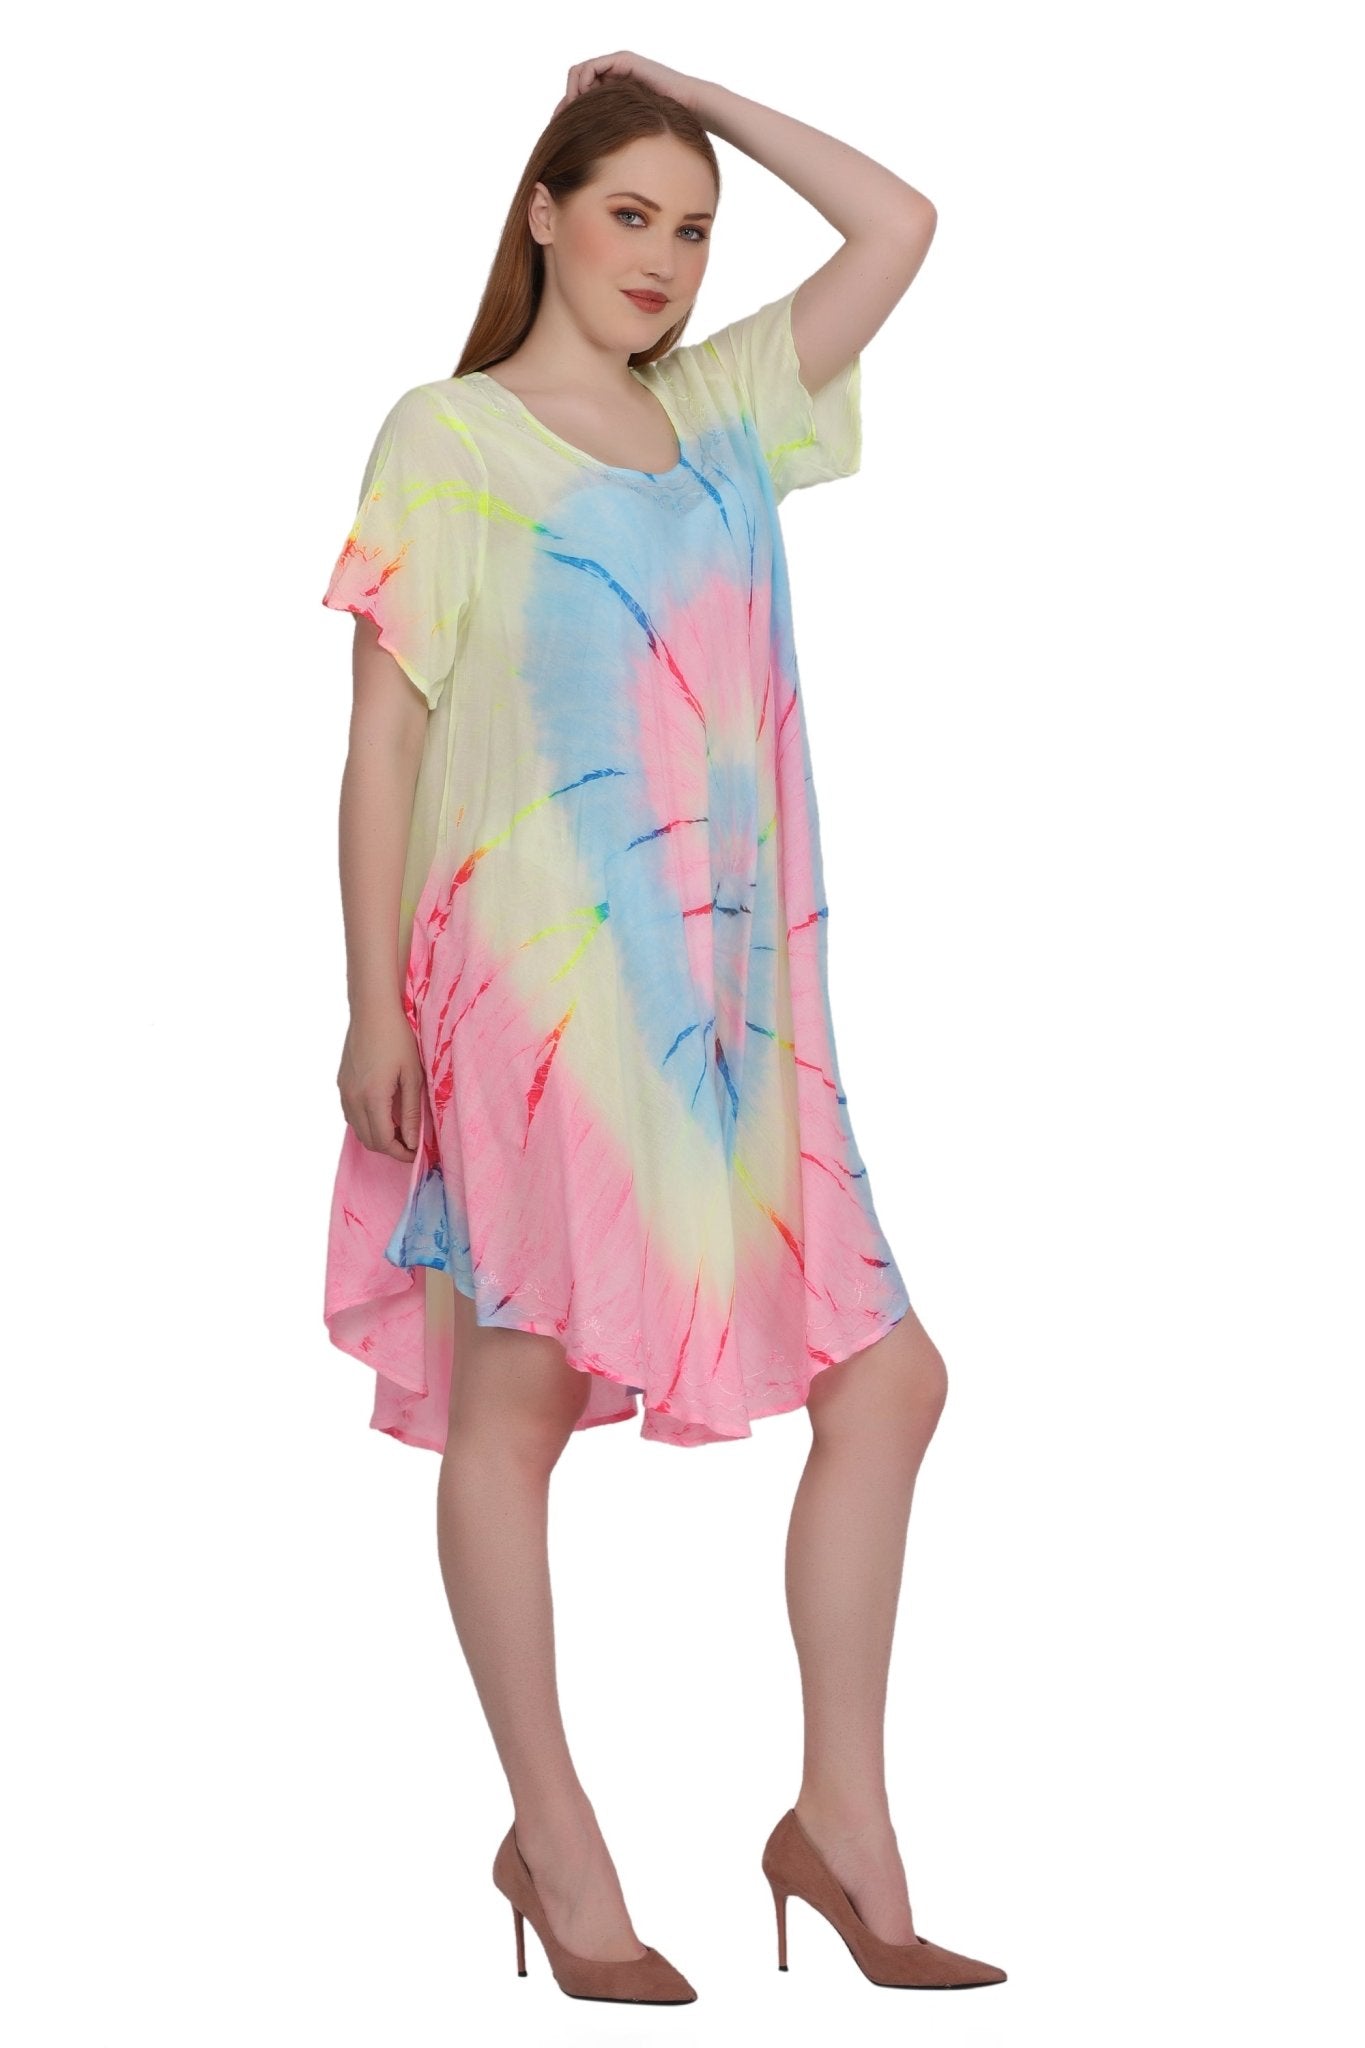 Neon Tie Dye Cap Sleeve Dress 442128 - Advance Apparels Inc